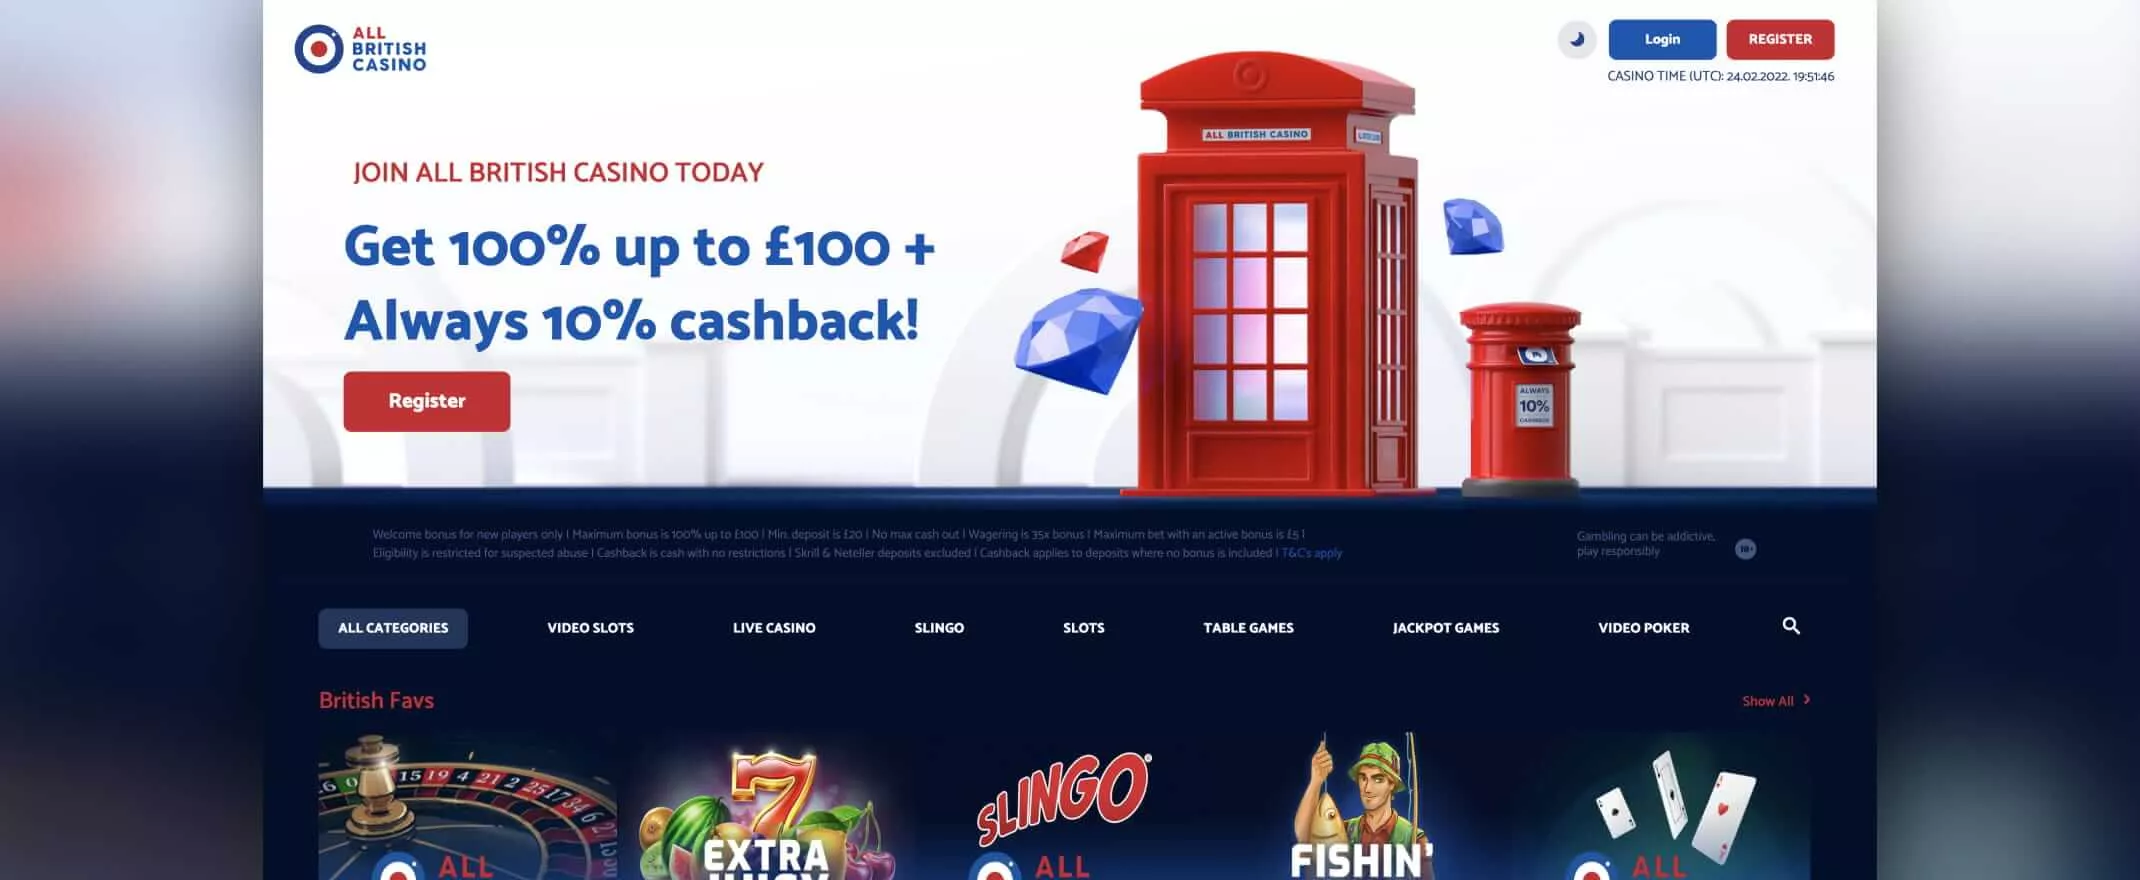 All British Casino screenshot of the homepage